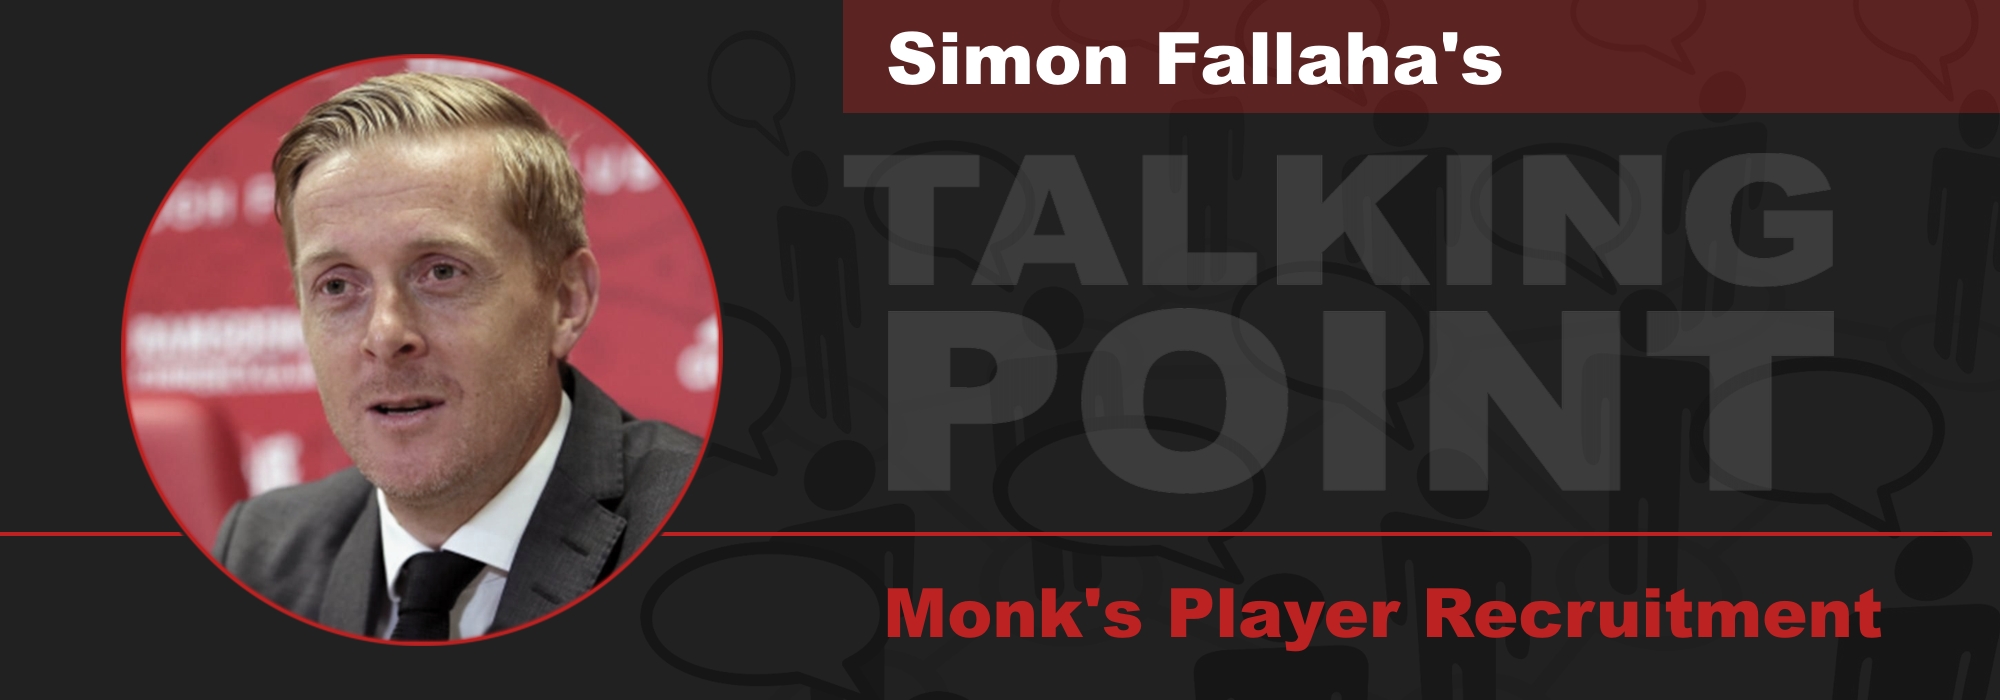 Talking Point - Monk